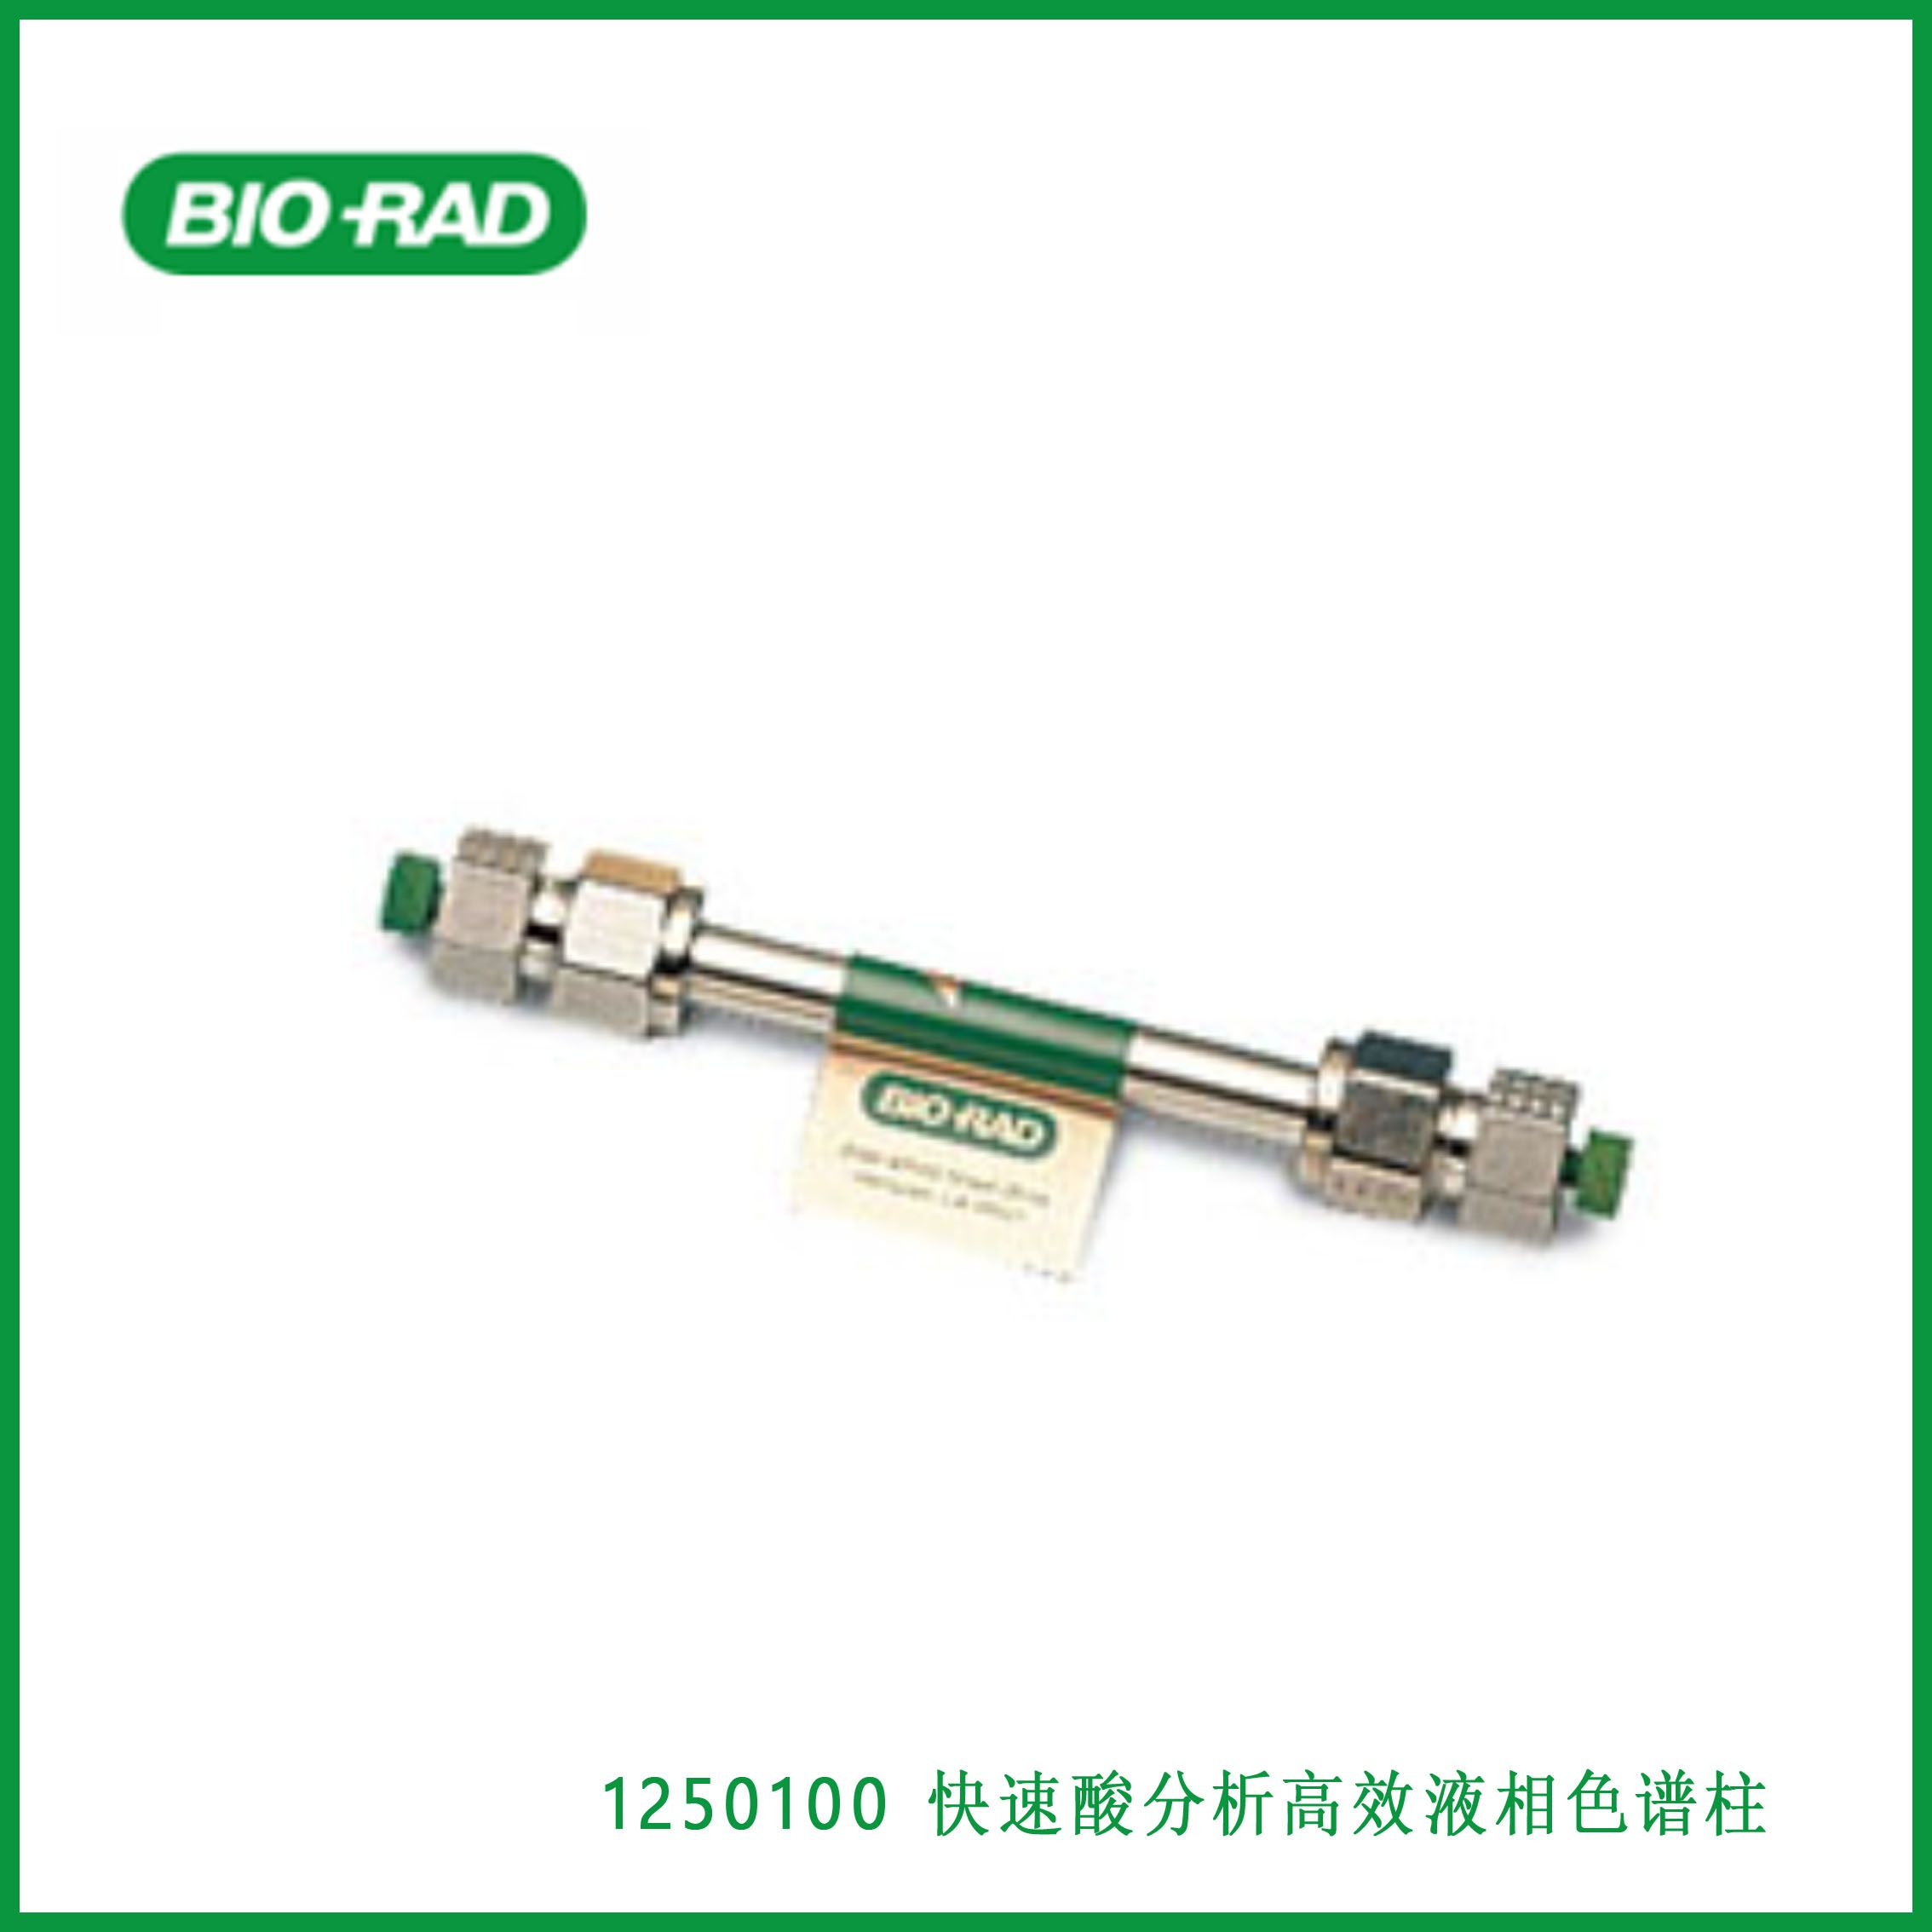 伯乐Bio-Rad1250100 Fast Acid Analysis HPLC Column，快速酸分析高效液相色谱柱,现货